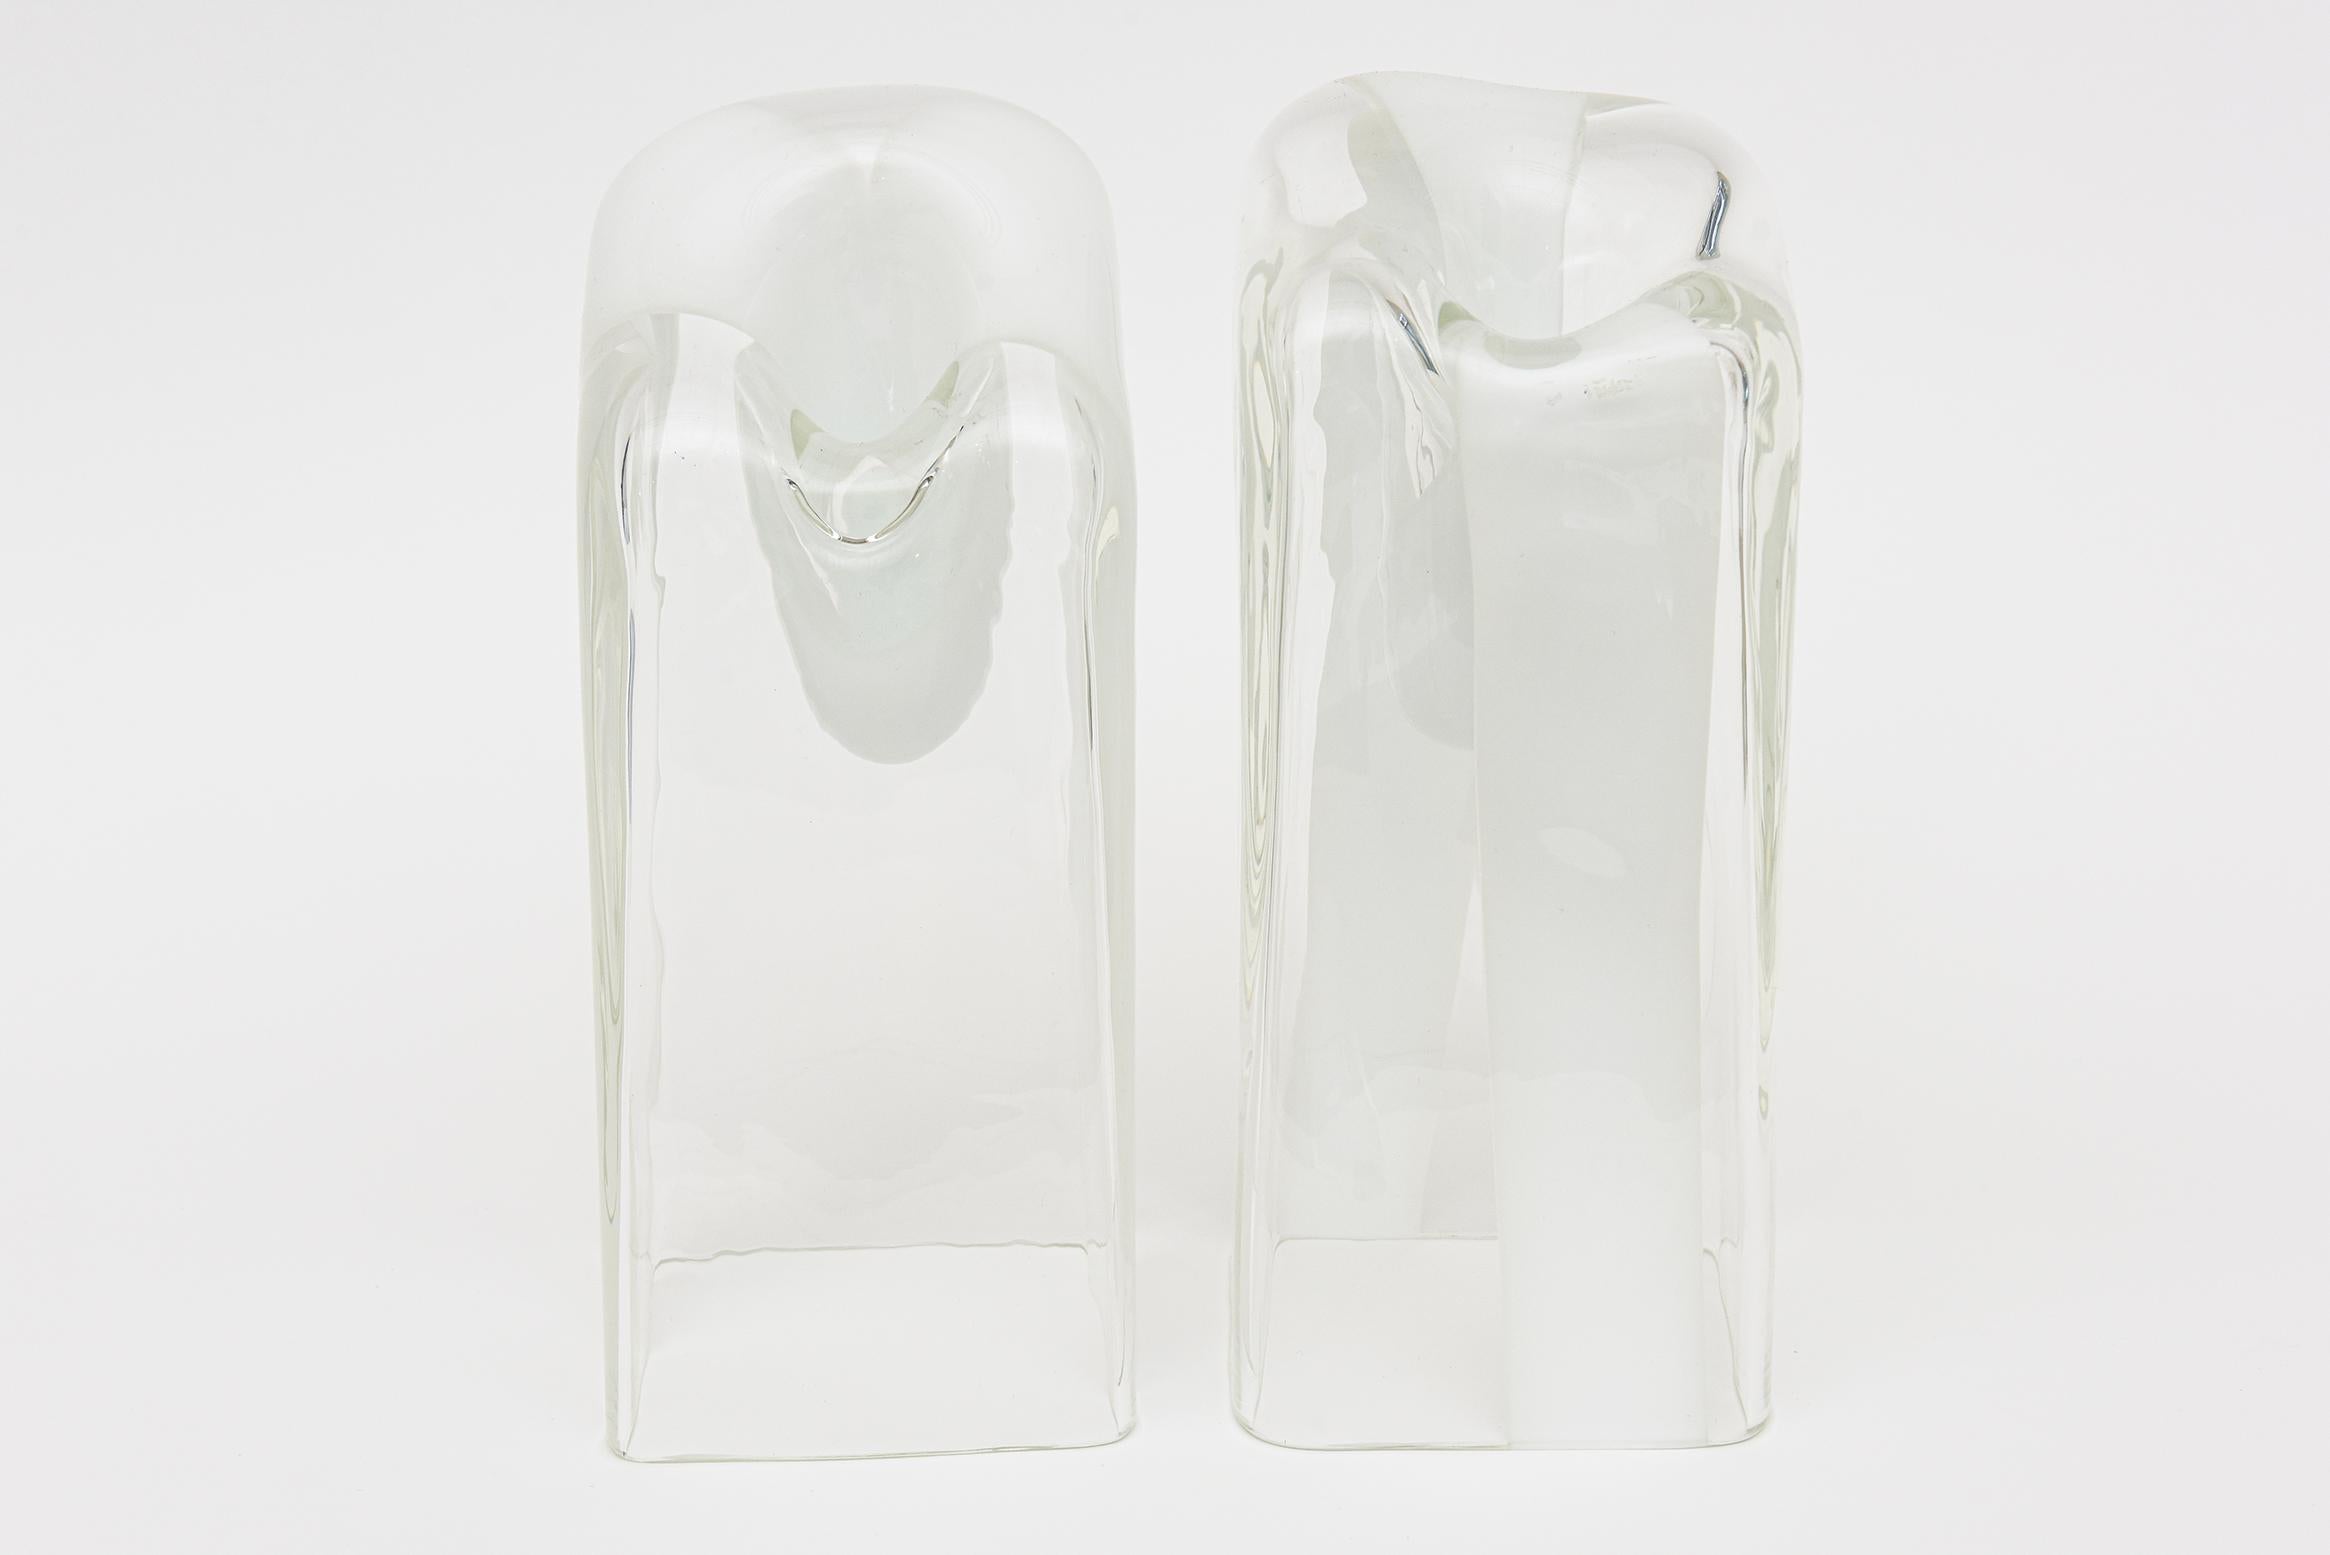 Diese ganz besonderen und ungewöhnlichen Murano-Vasen, -Gefäße und -Glasskulpturen stammen von Antonio da Ros für Cenedese und aus den 70er Jahren. Sie sind alle aus mundgeblasenem Glas und variieren in der Größe des Kleckses sowie in Höhe und